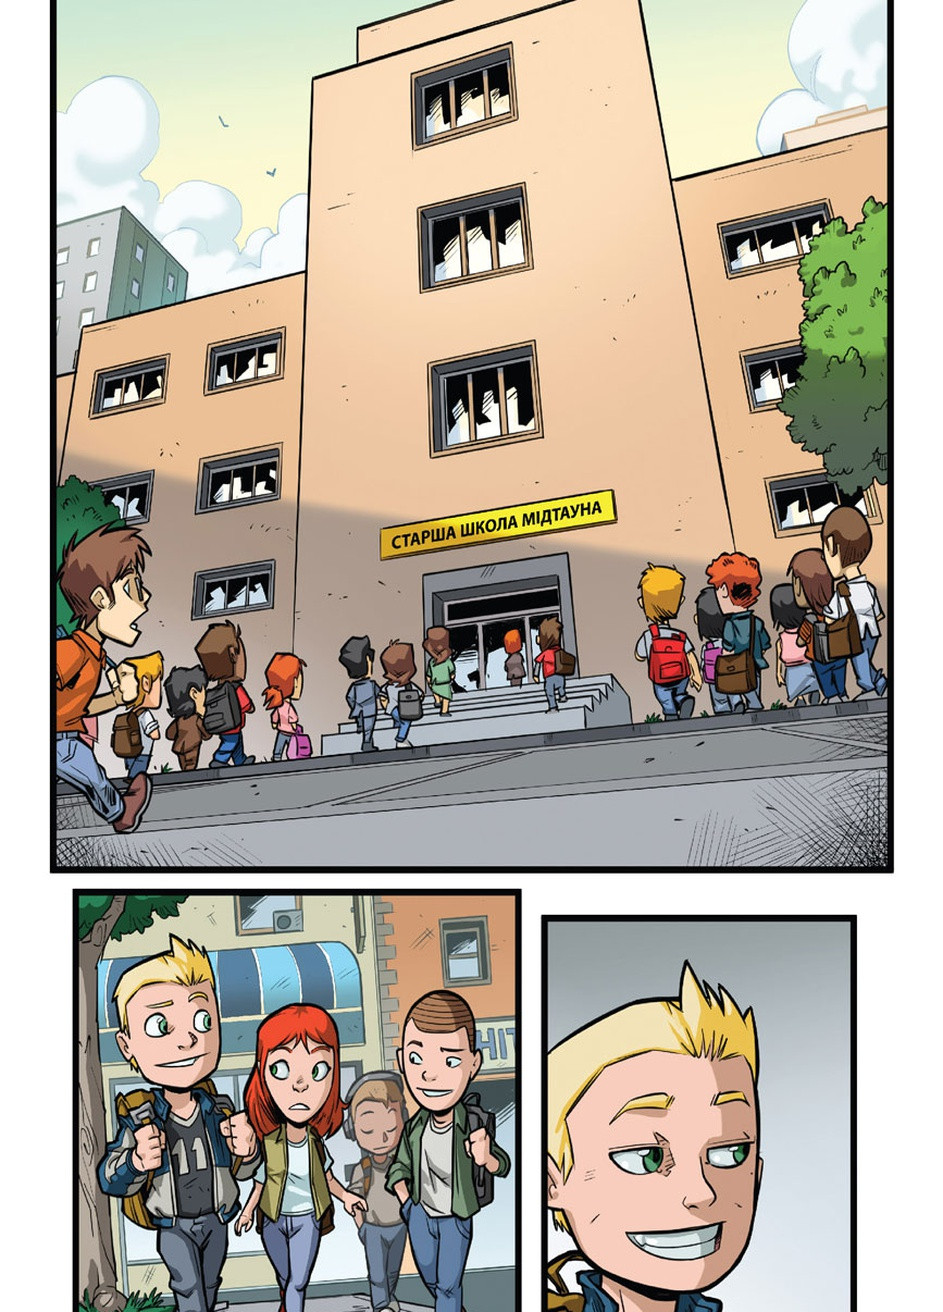 Комикс под названием Супергеройские приключения. Первый день в школе No Brand (257037784)